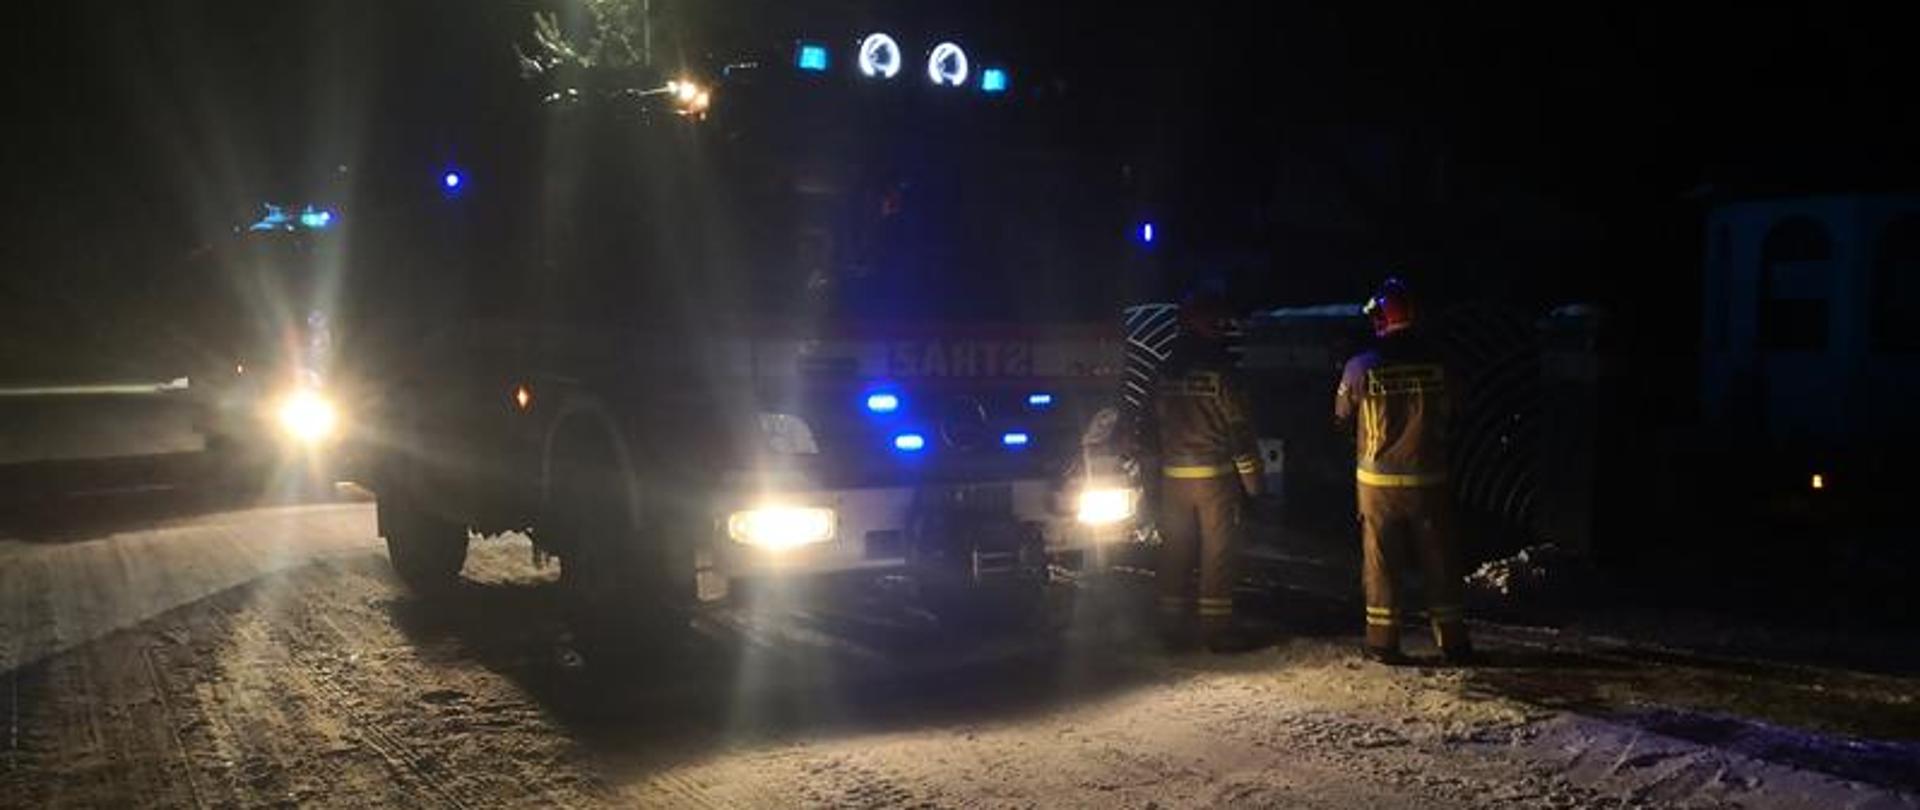 Dwóch strażaków ubranych w środki ochrony osobistej prowadzą działania związane z pożarem sadzy w przewodzie kominowym. Obok posesji ustawione są pojazdy pożarnicze z włączoną sygnalizacją świetlną.